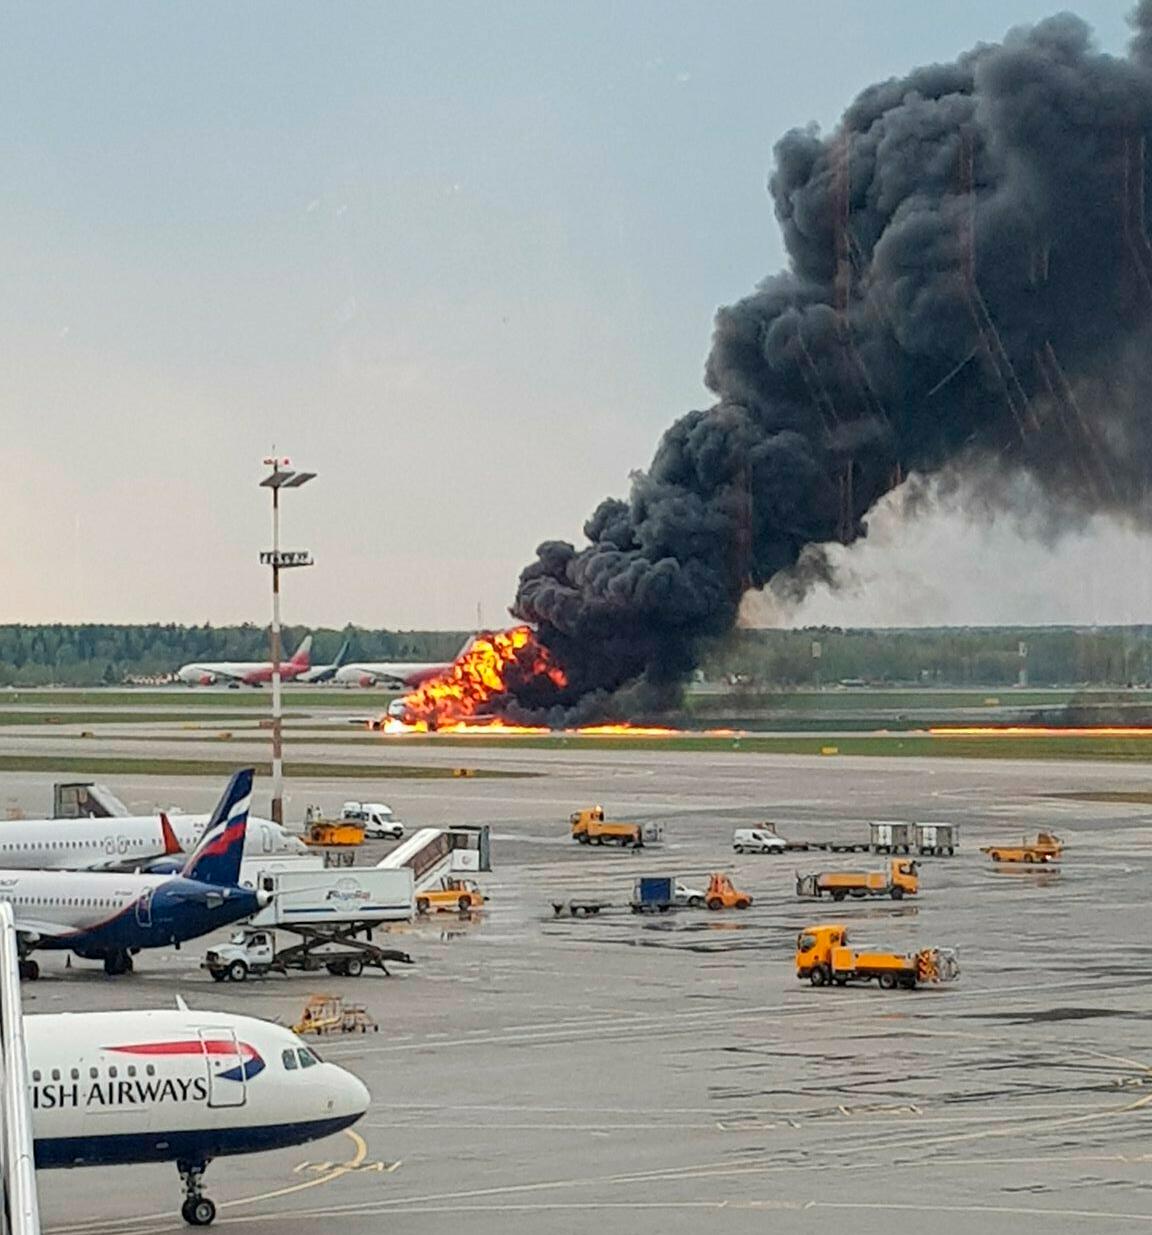 Minst 41 personer ska ha dött i branden på flygplatsen Sjeremetjevo.